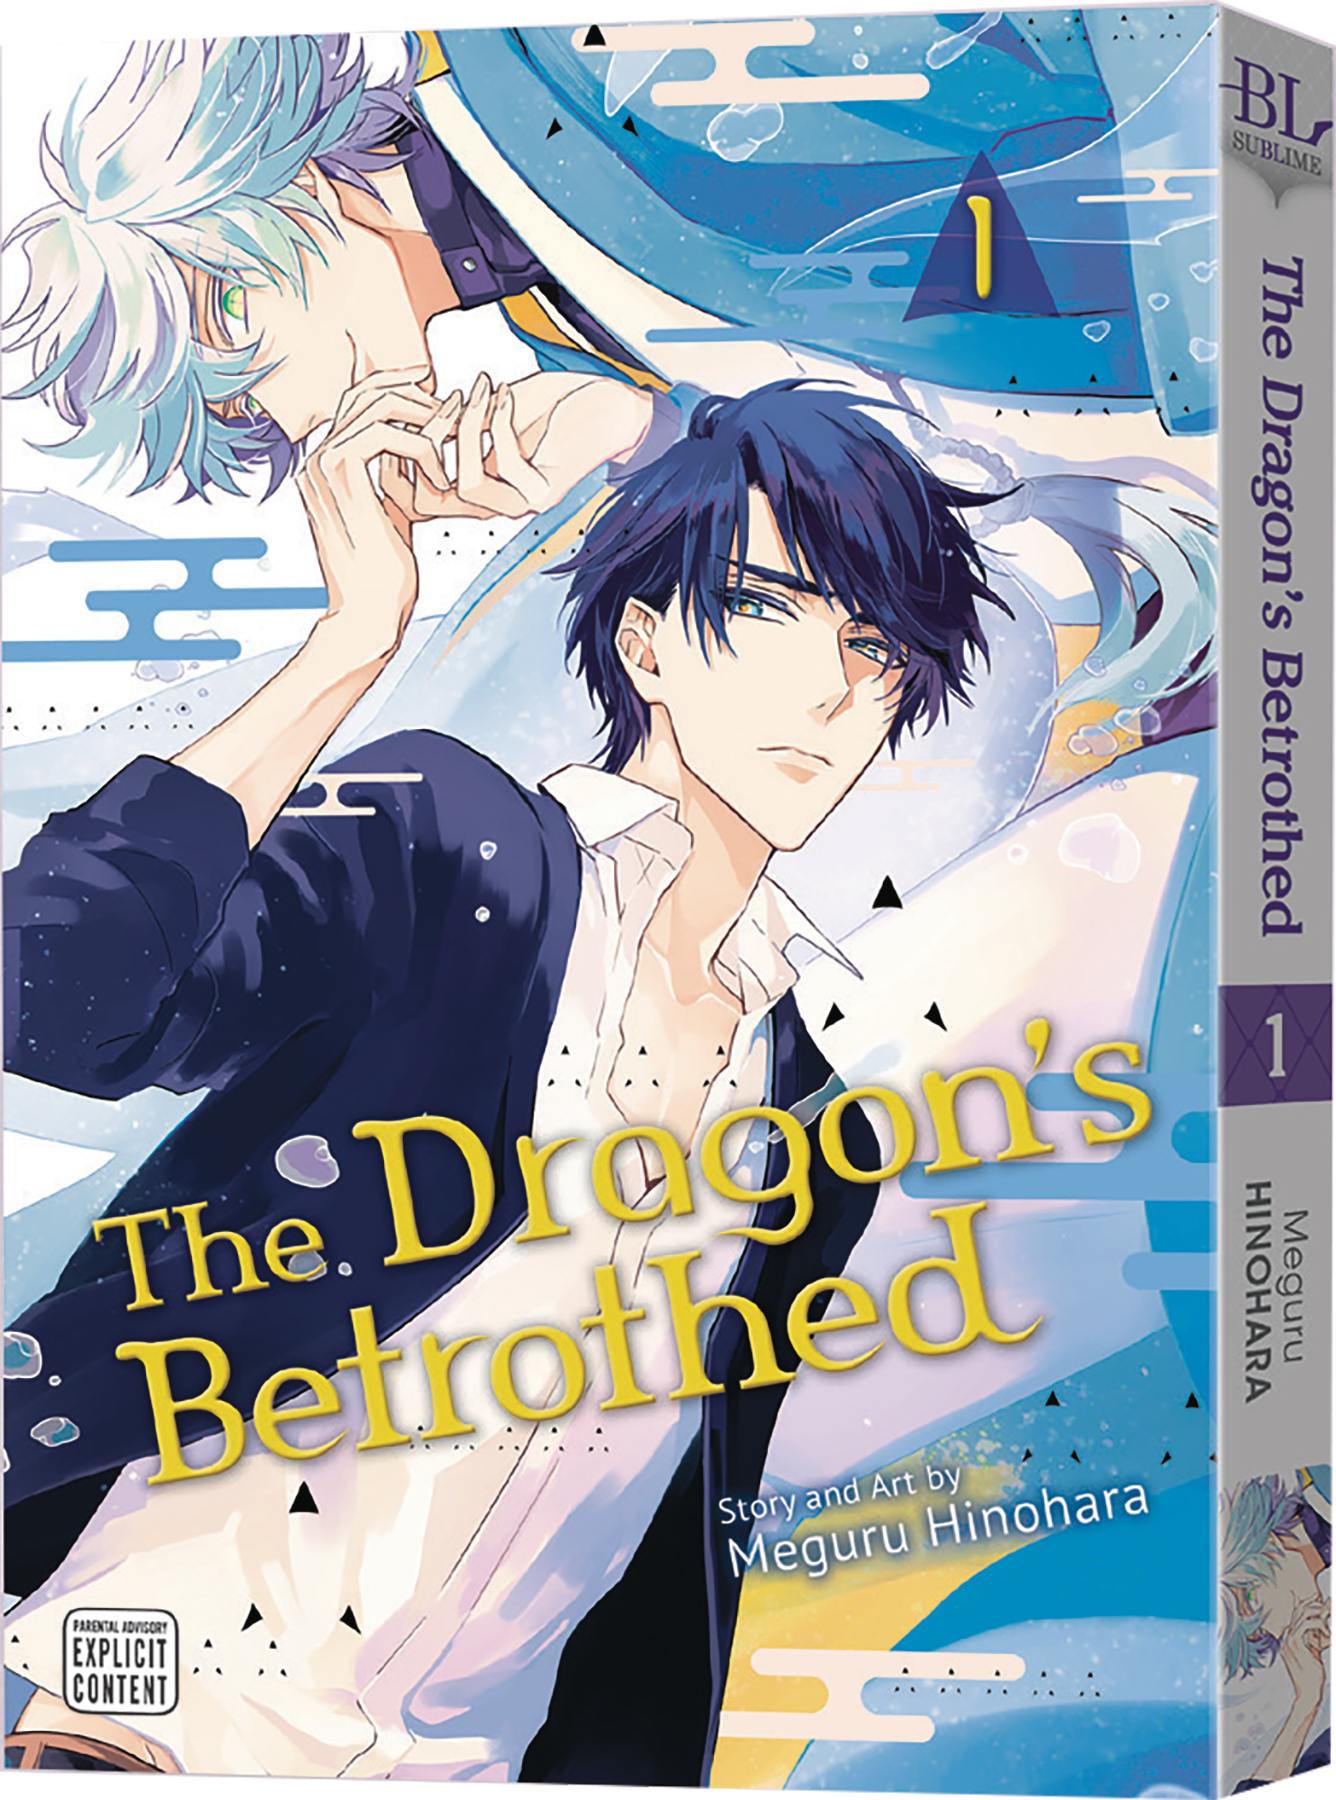 Dragons Betrothed Manga Volume 1